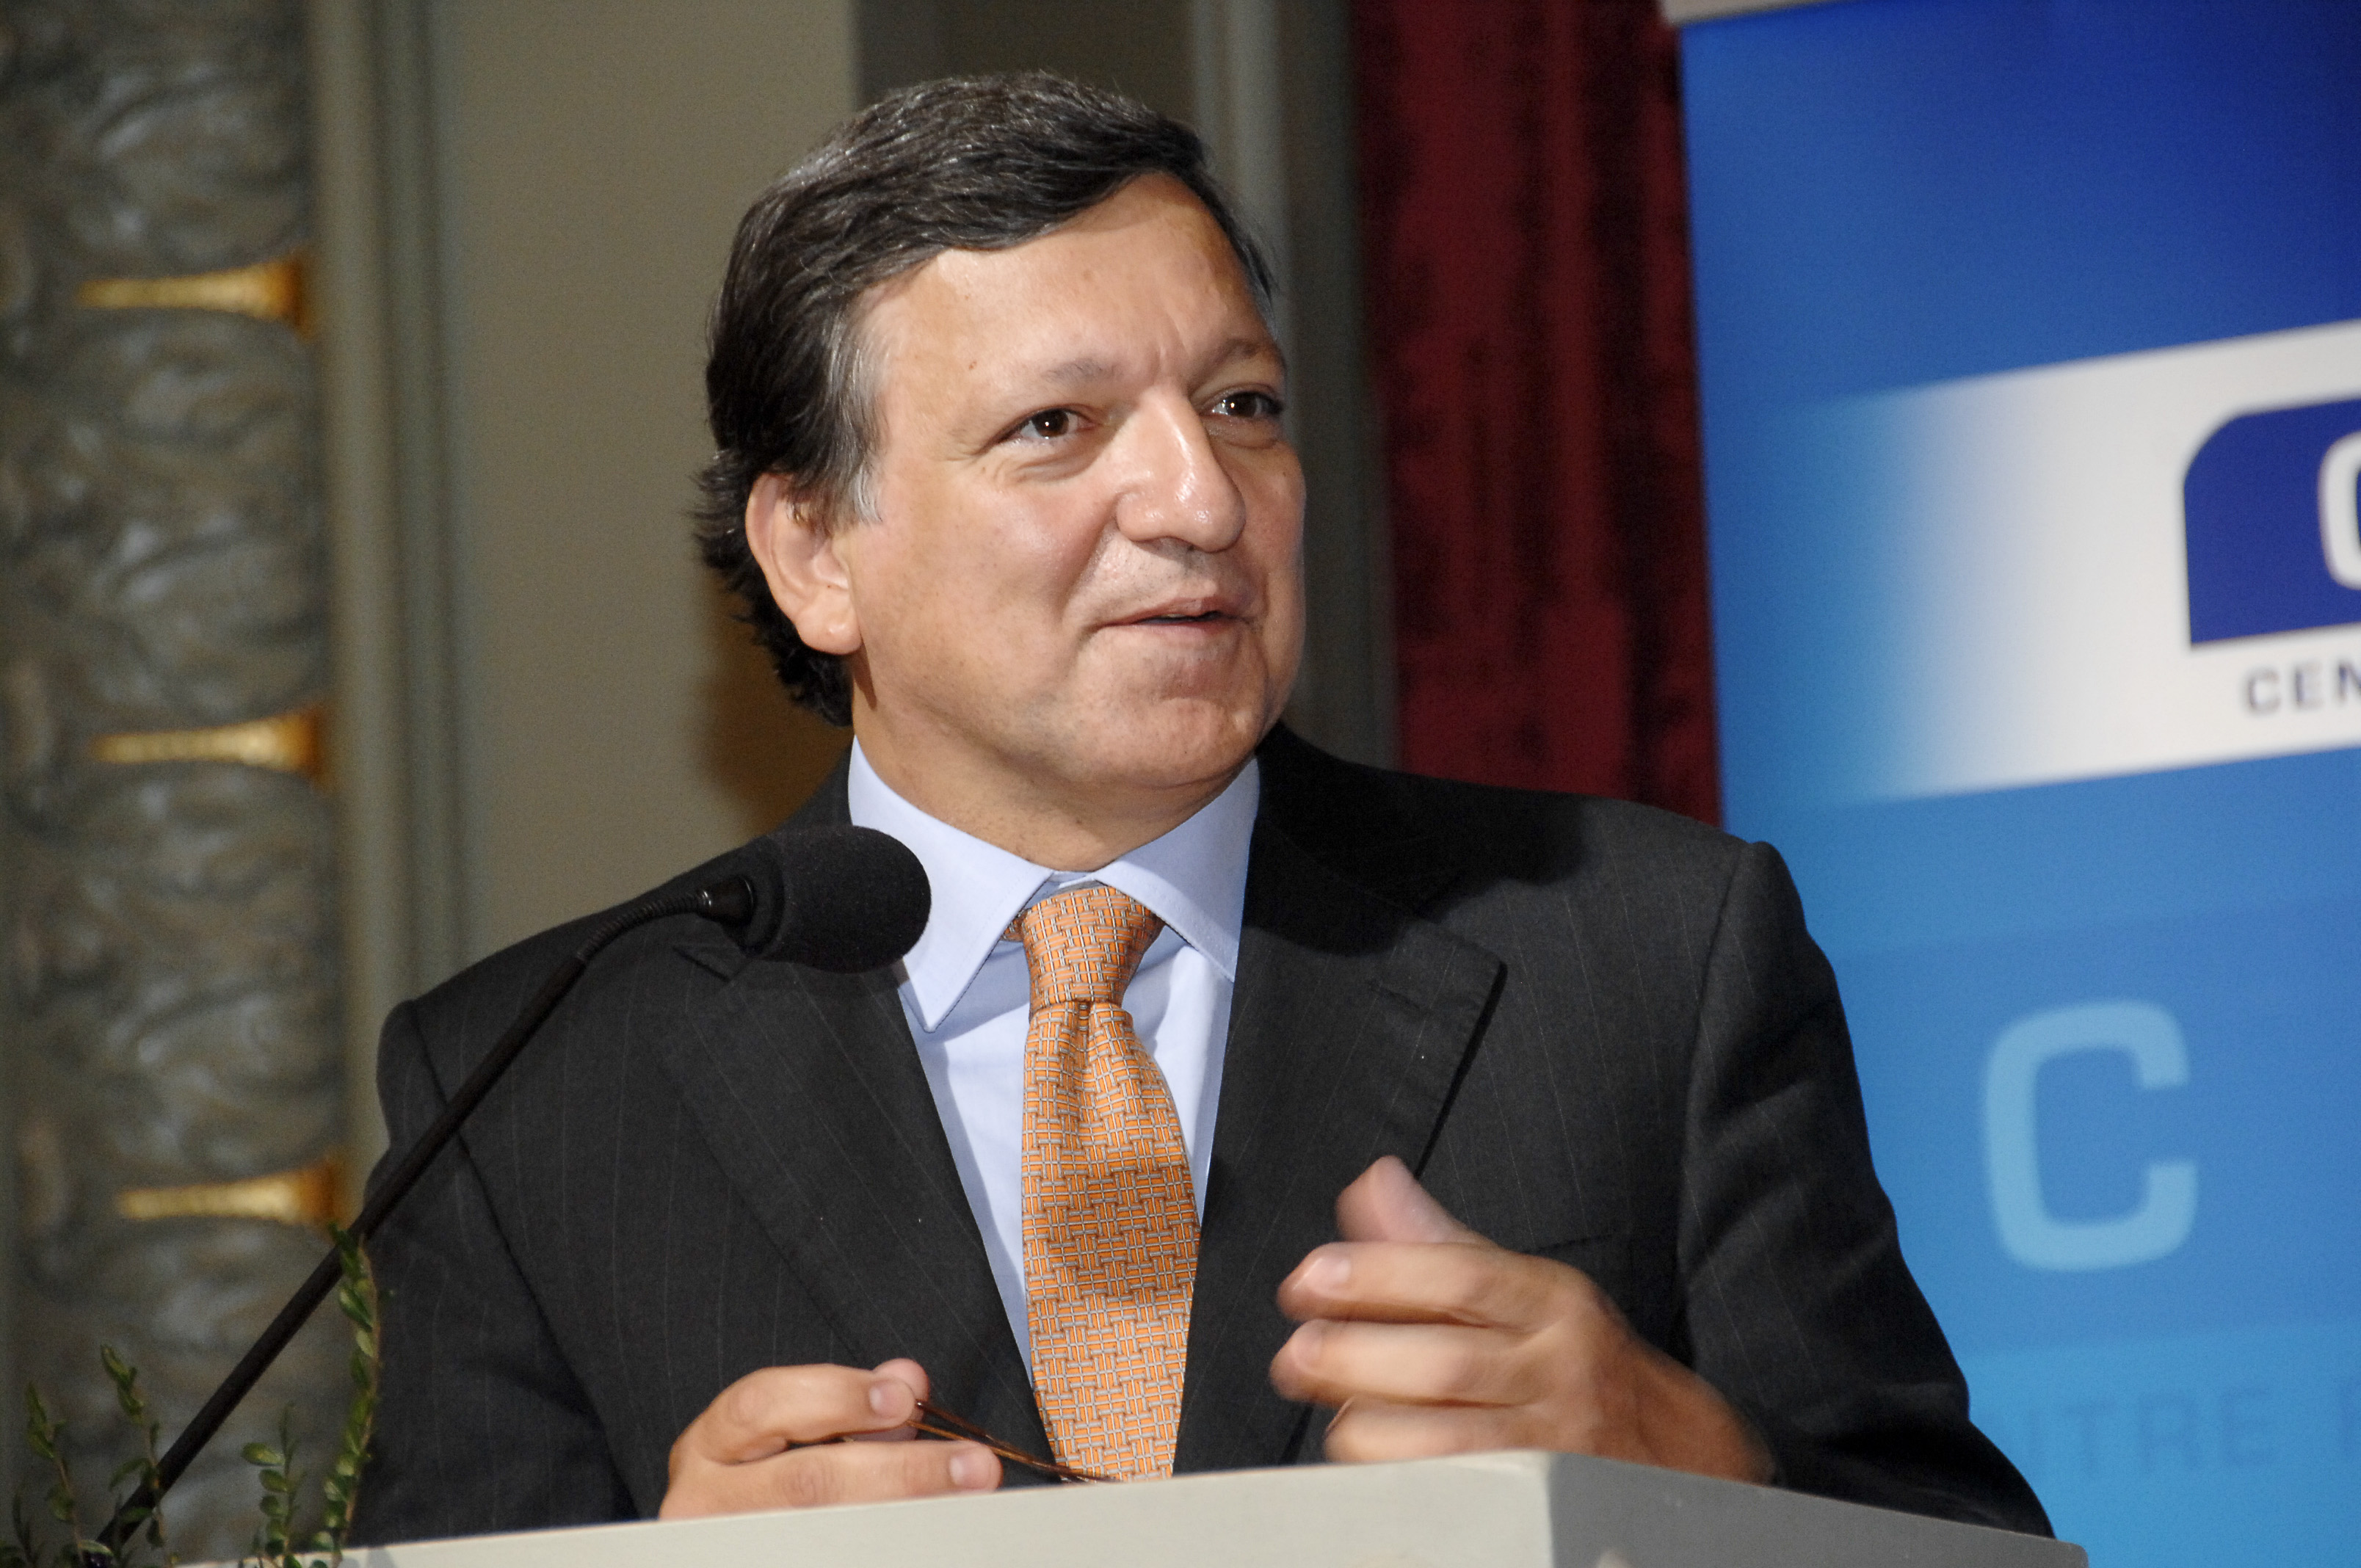 Gente de cá e de lá - Episódio 1 - José Manuel Durão Barroso - O